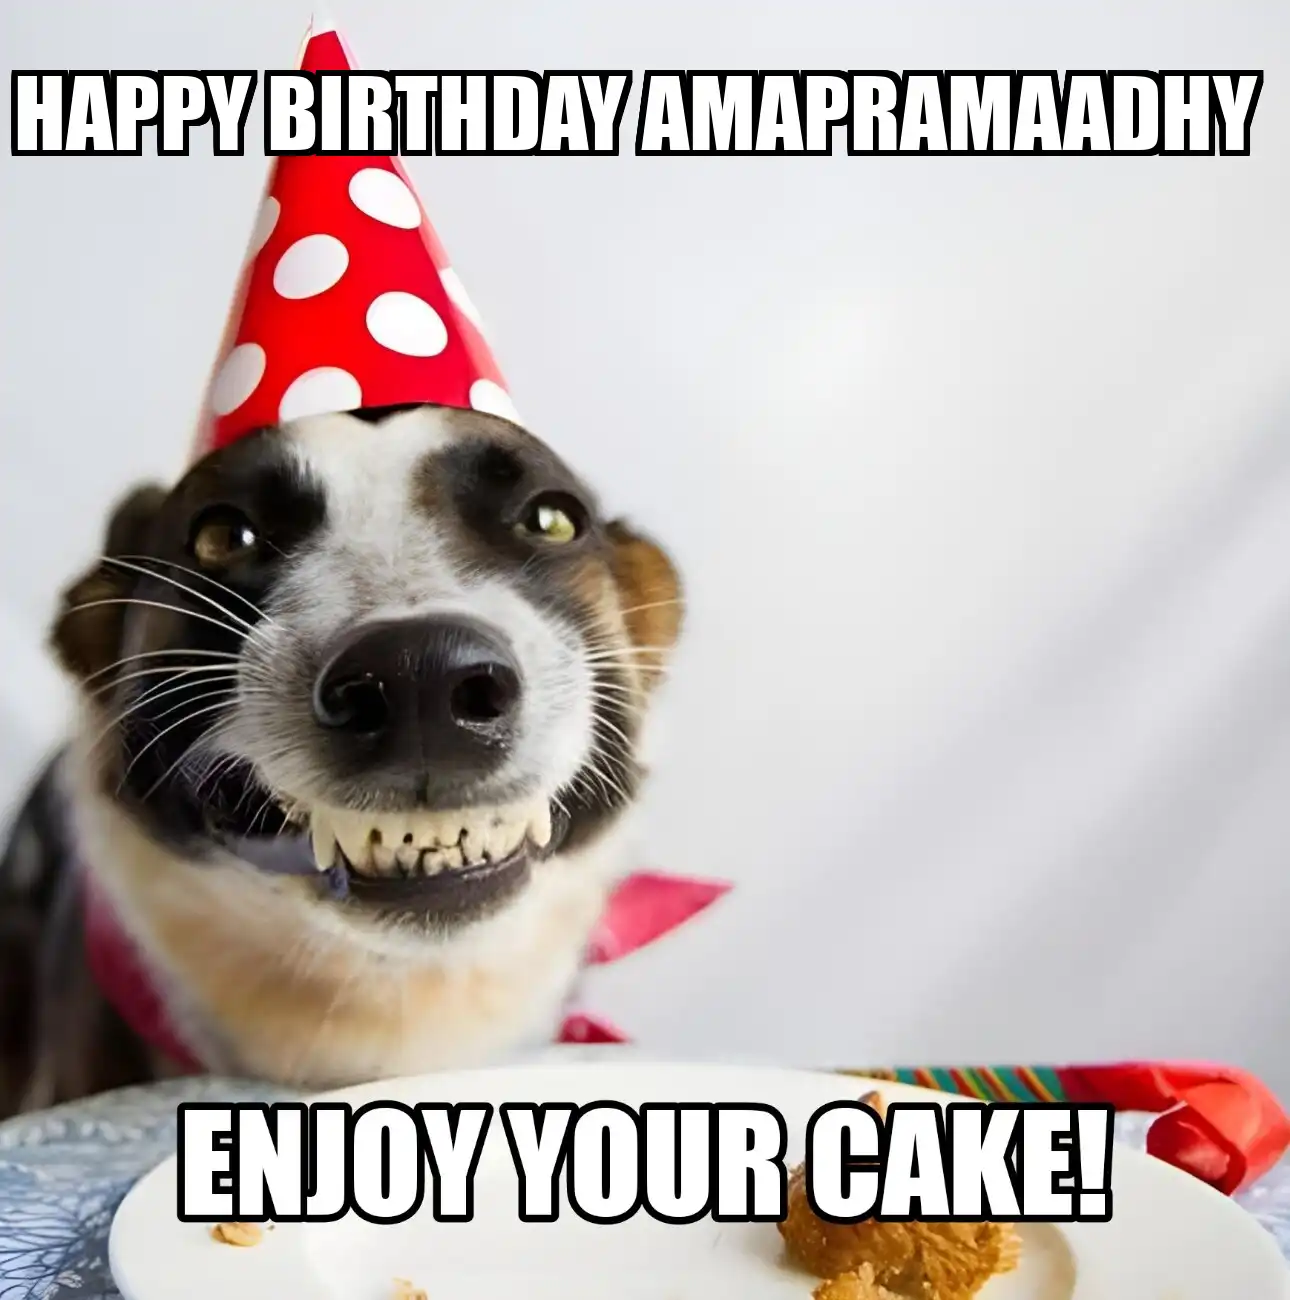 Happy Birthday Amapramaadhy Enjoy Your Cake Dog Meme